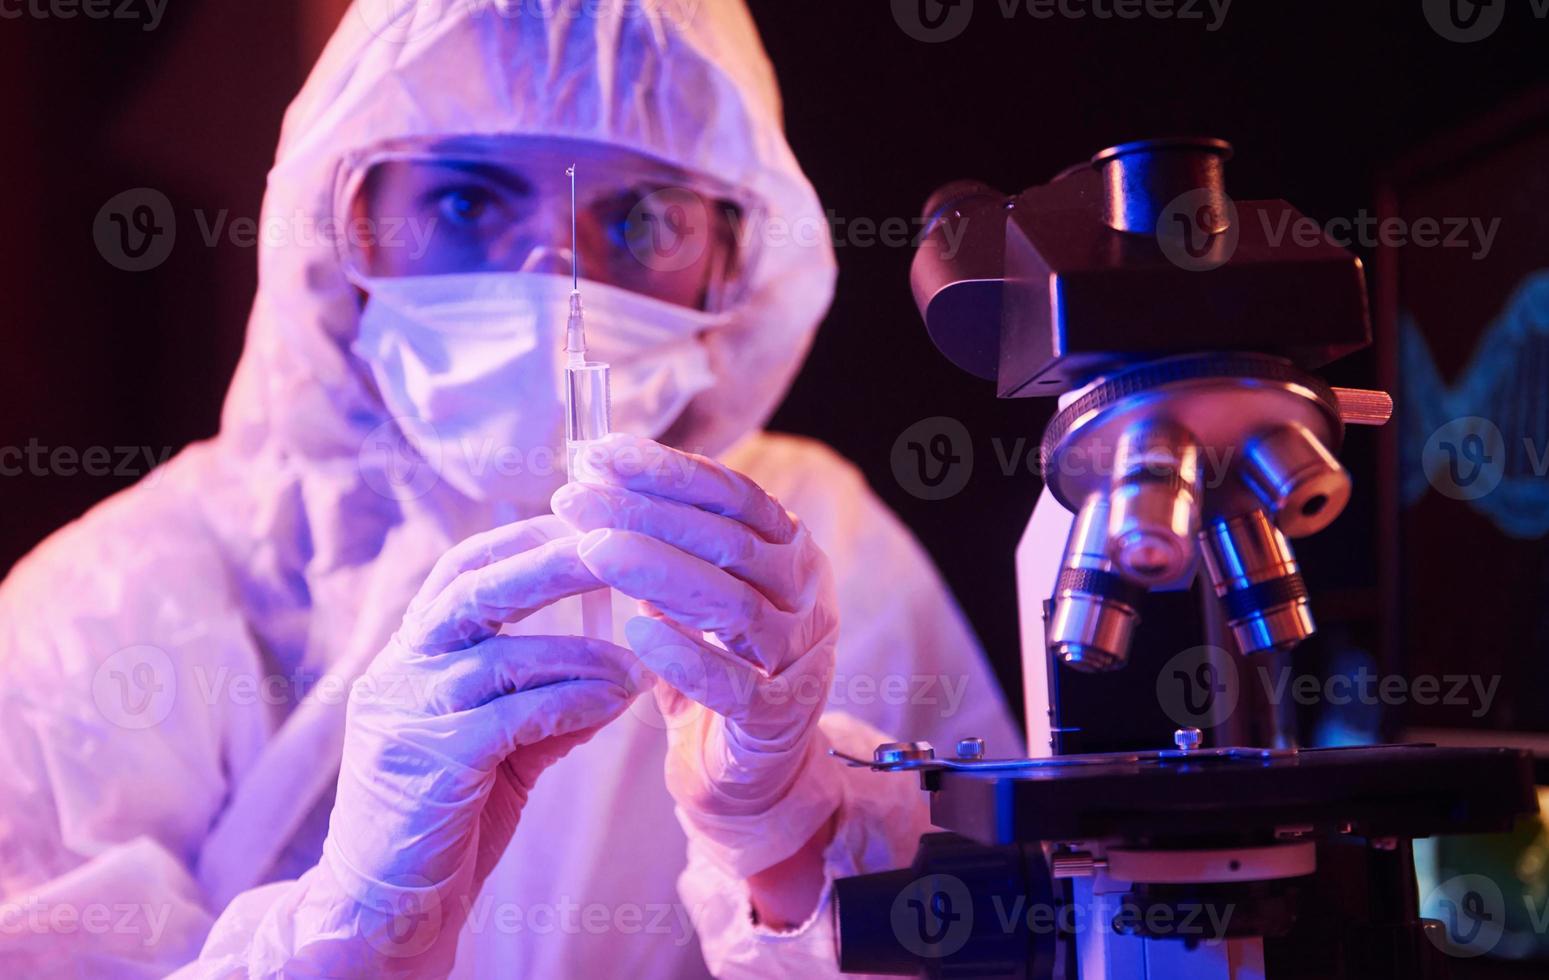 enfermera con máscara y uniforme blanco, sosteniendo una jeringa y sentada en un laboratorio iluminado con neón con computadora y equipo médico en busca de la vacuna contra el coronavirus foto